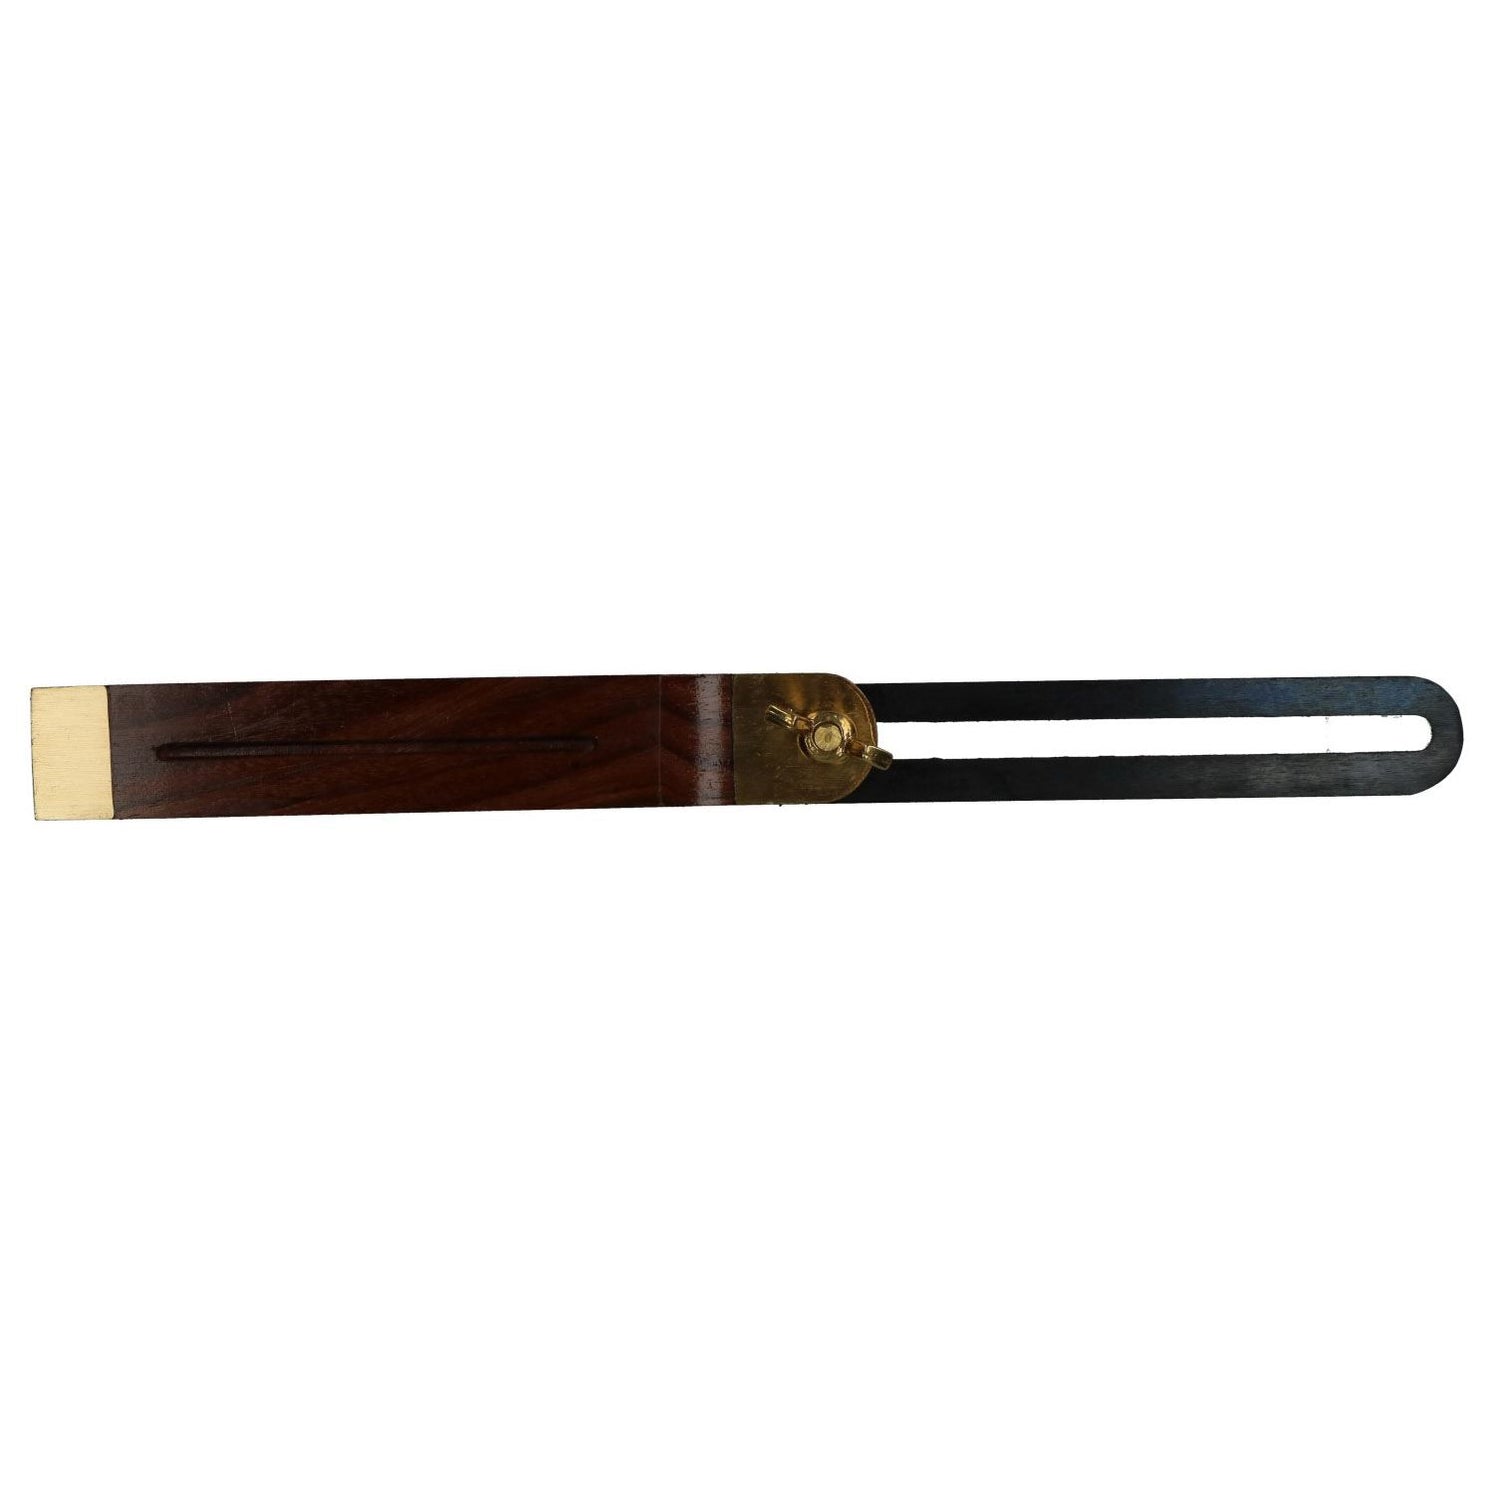 10.5" (265mm) Hardwood Bevel Brass Carpenter Adjustable Sliding Wood Work